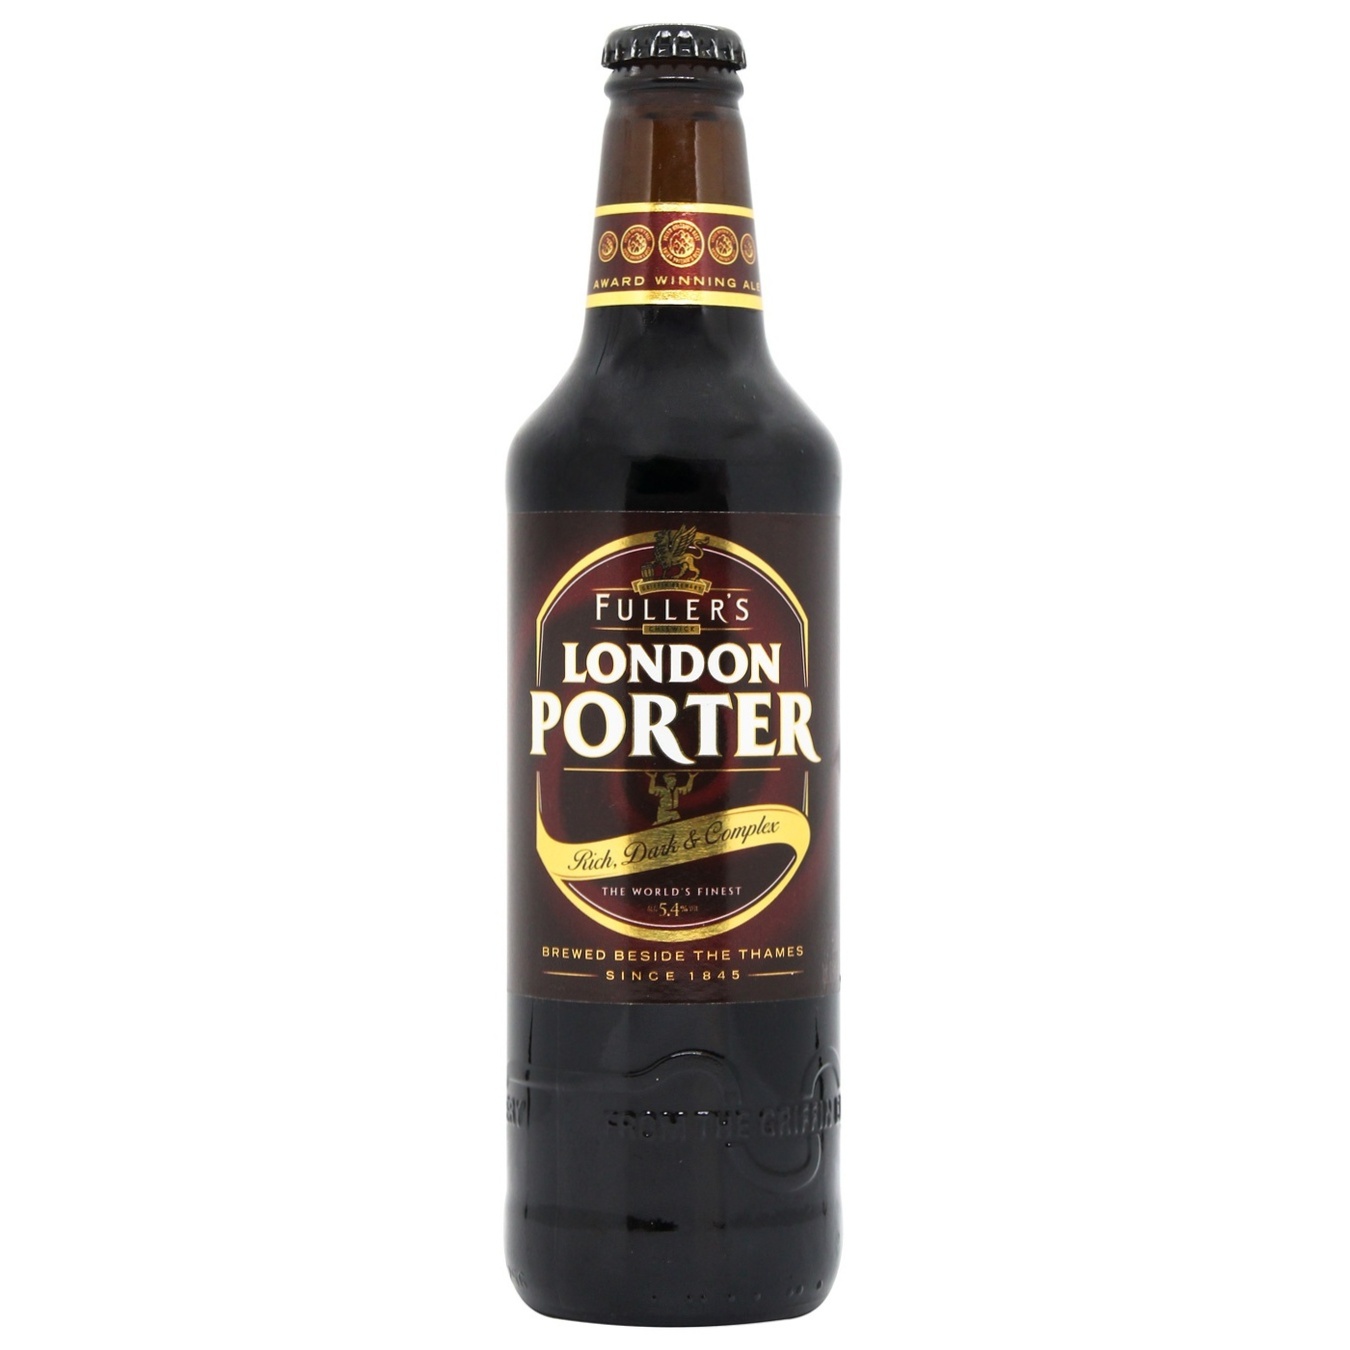 Dark beer Fullers London Porter 5.4% 0.5l glass bottle